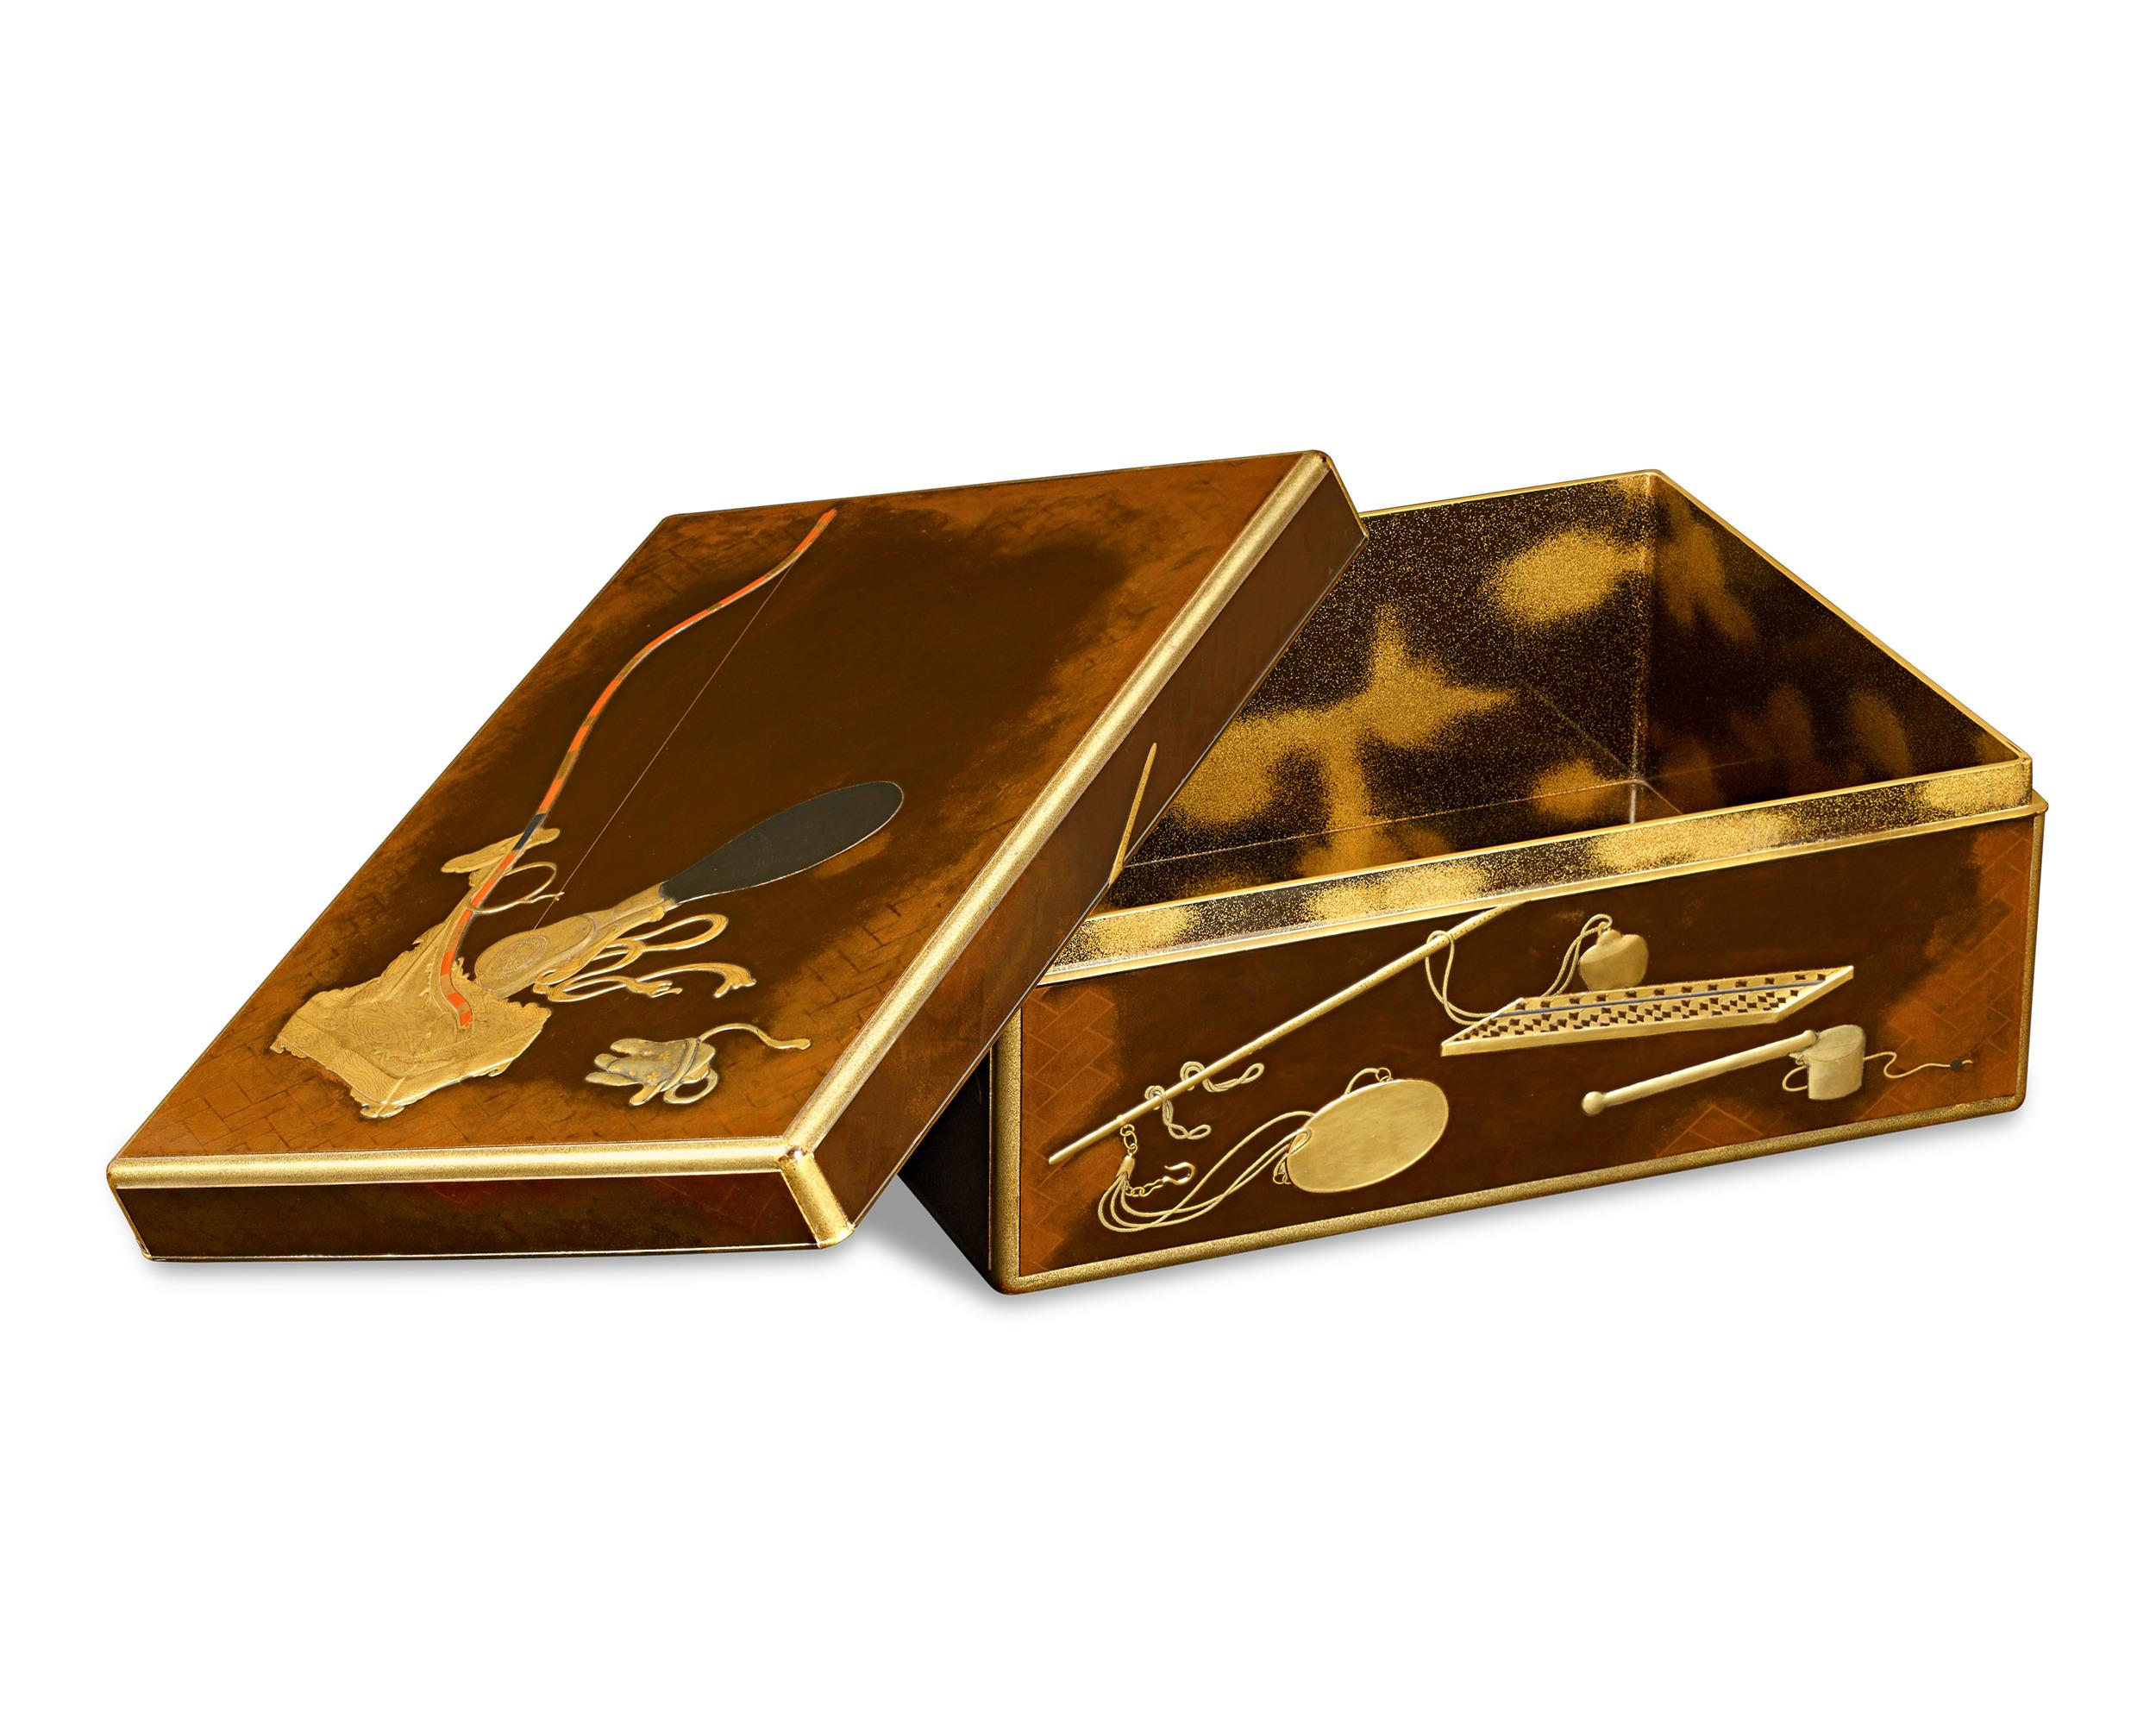 Cette exquise boîte à documents en laque de la période Meiji, connue sous le nom de ryoshibako, témoigne de l'art méticuleux du maki-e, une technique de décoration en laque en relief. Ornée d'or et de couleurs vives, elle comporte des emblèmes